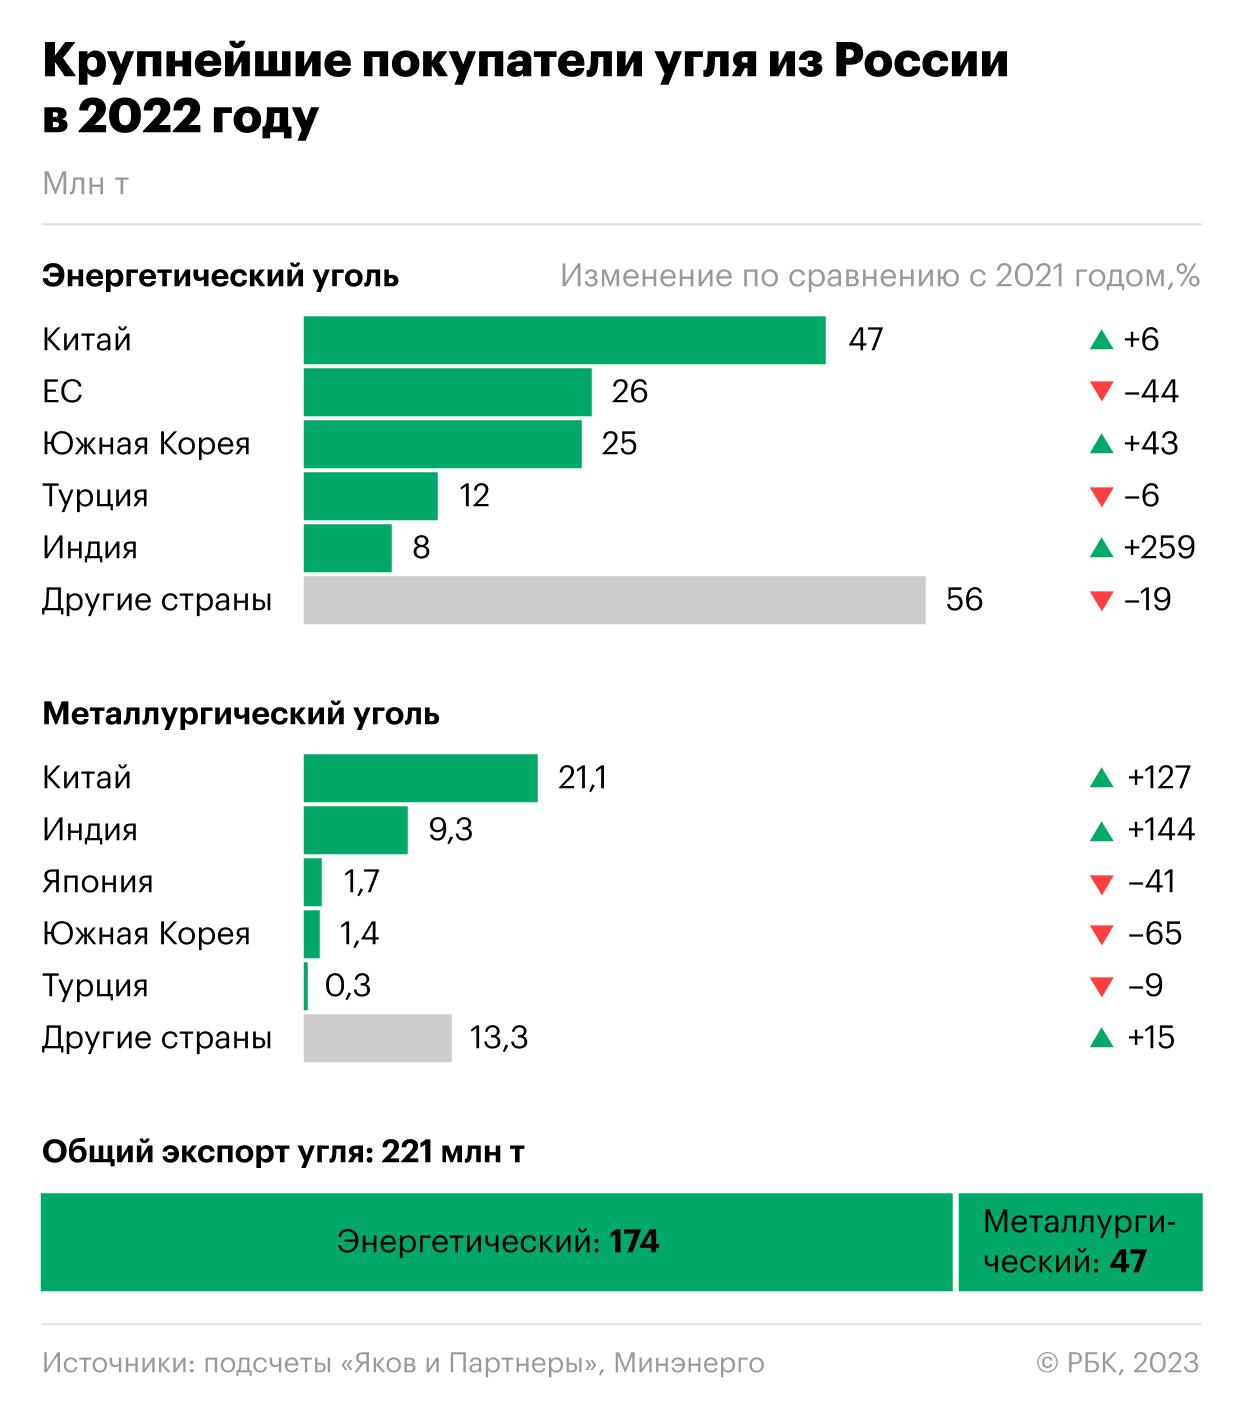 Как Индия активнее всех наращивает покупки угля из России. Инфографика